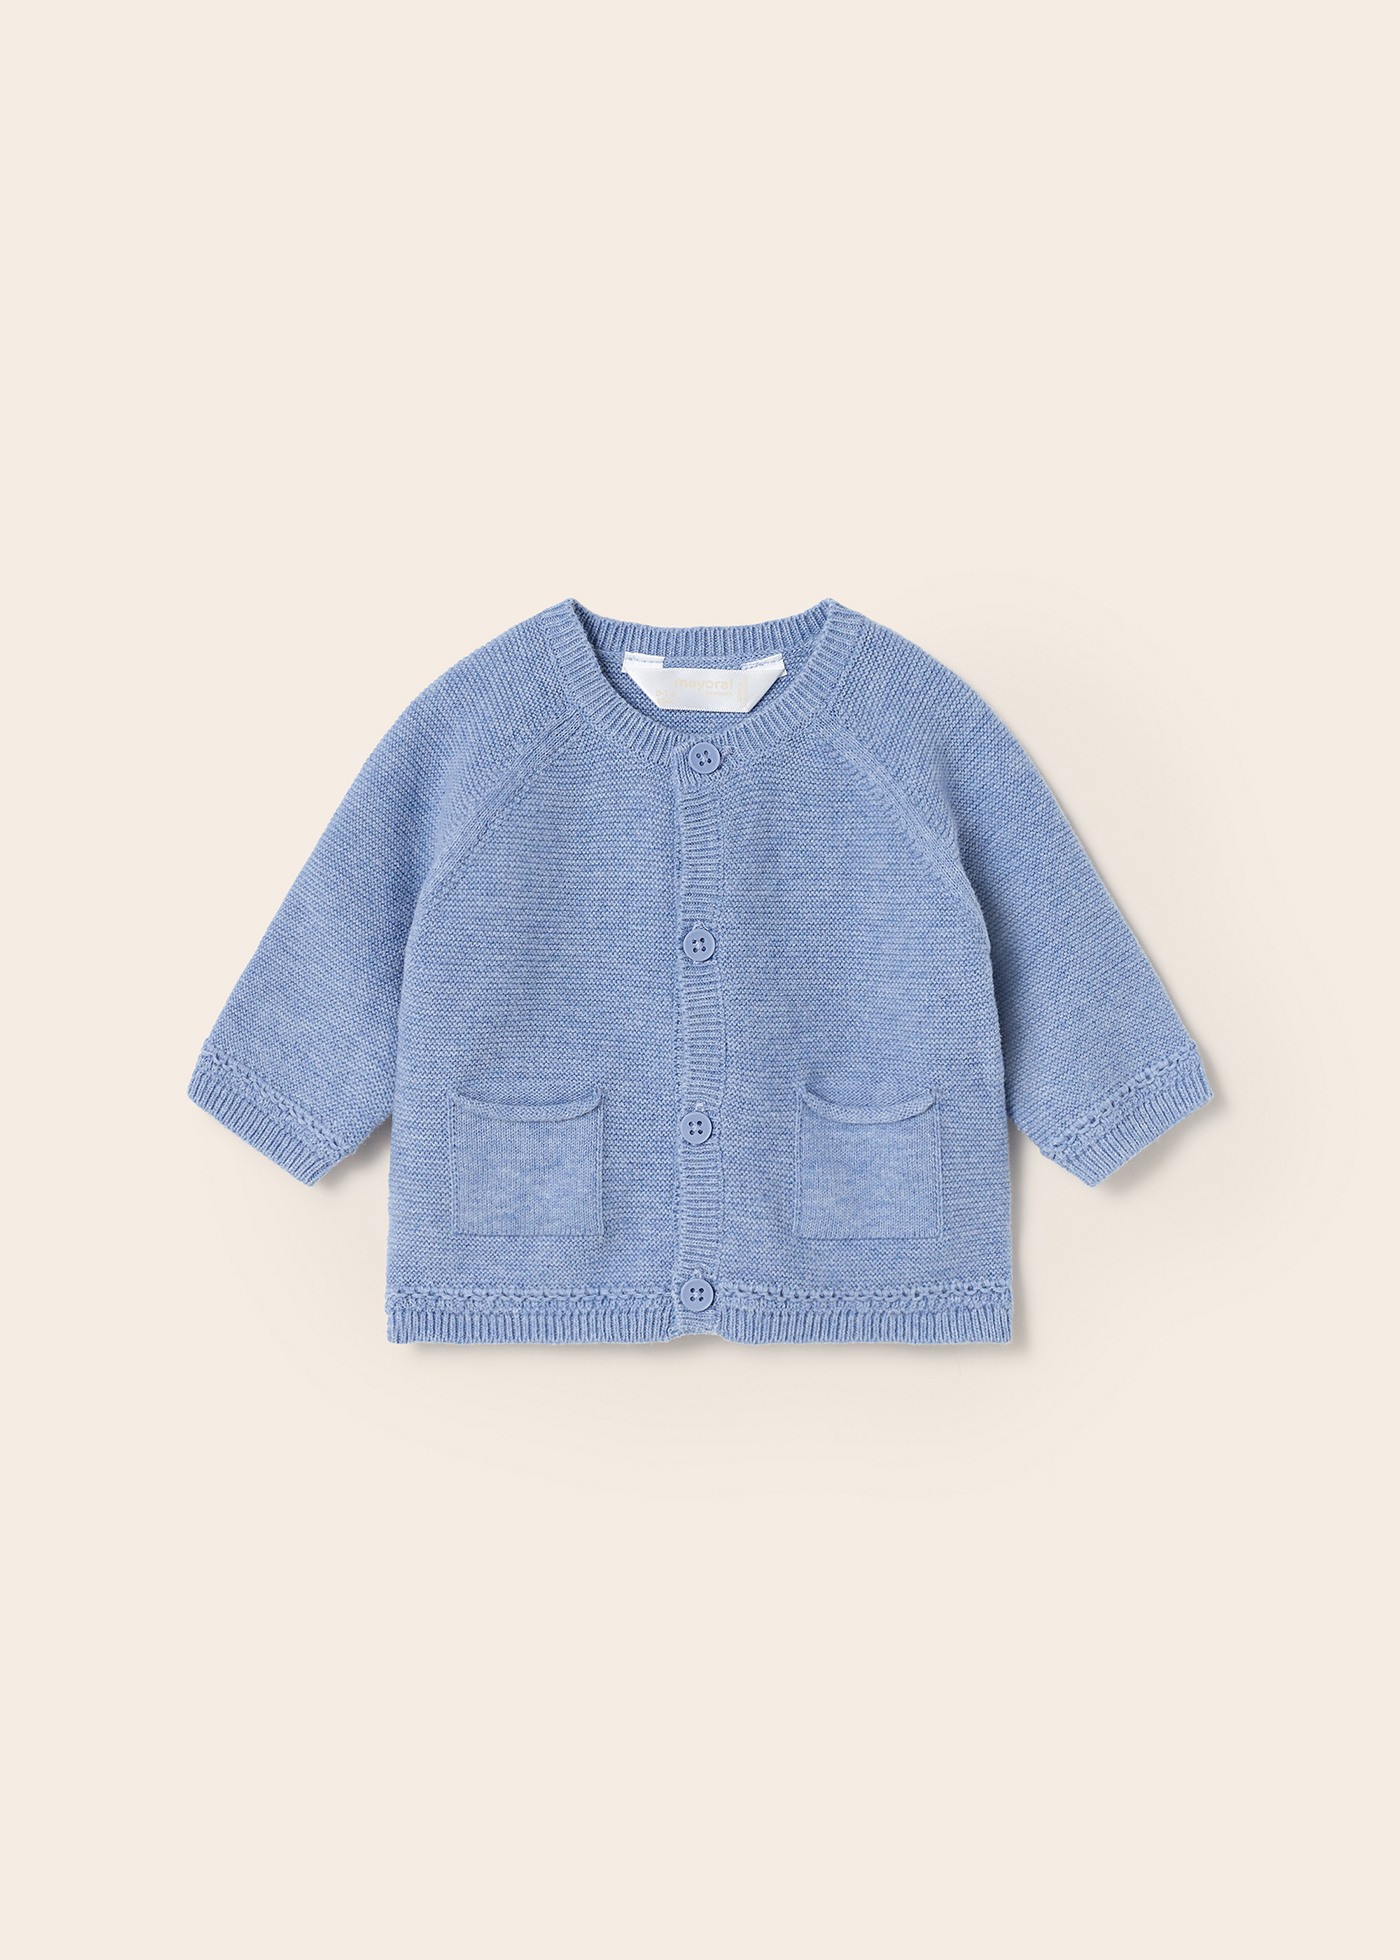 (image for) Giacca tricot in cotone sostenibile neonato mayoral Art. 23-01360-083